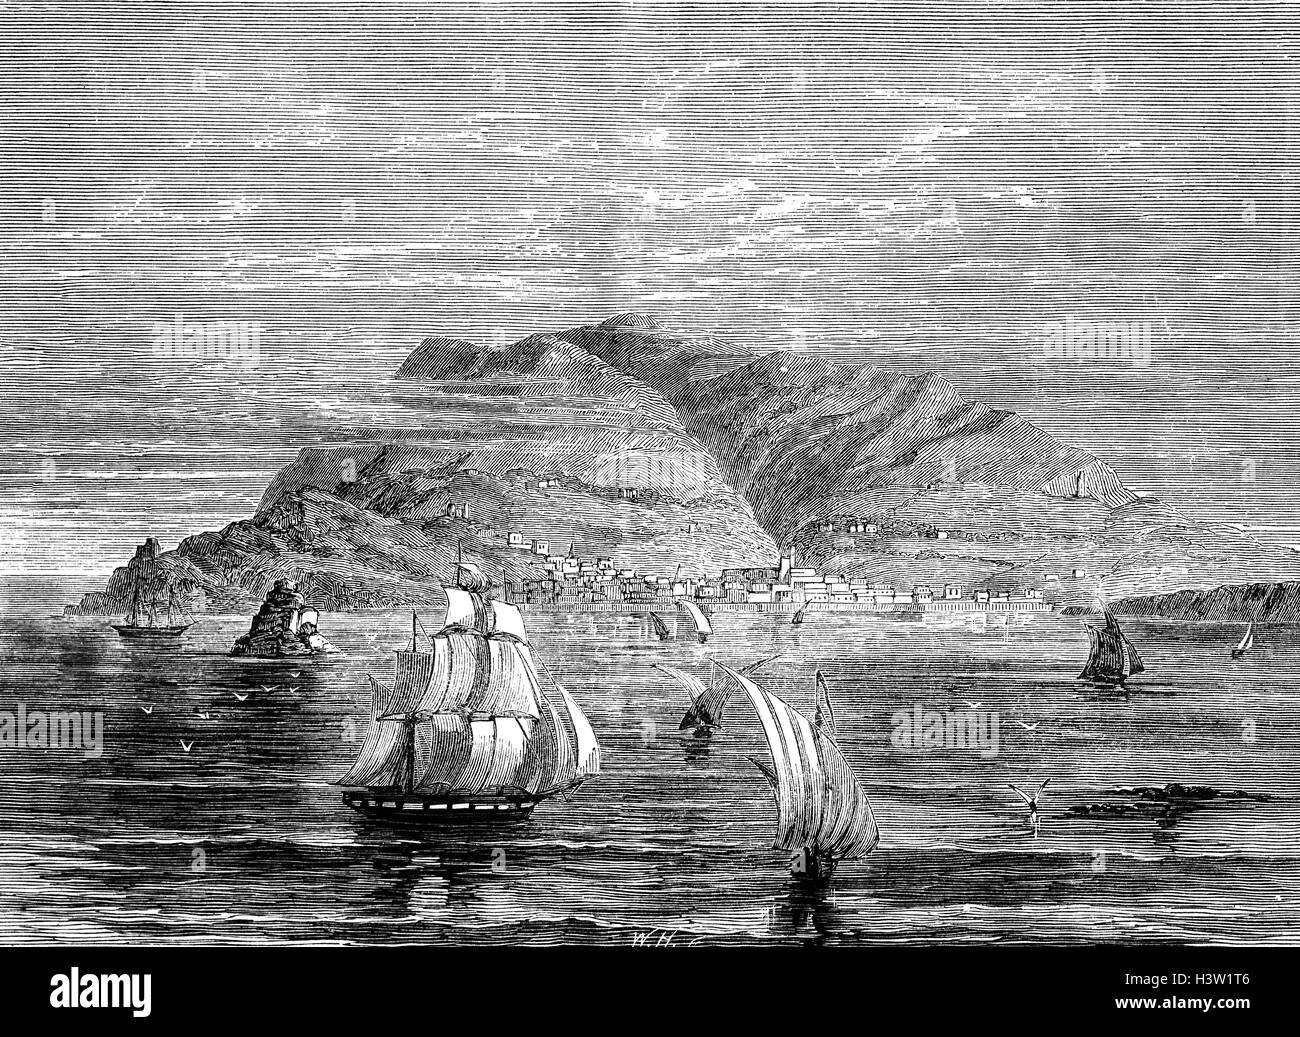 CSS Shenandoah était un fer à pans de bois, teck à, le trois-mâts carré, avec la machine à vapeur auxiliaire, lancé le 17 août 1863. Acheté par la Marine confédérée, il s'embarqua à Londres le 8 octobre 1864, apparemment pour Bombay, en Inde, sur un voyage commercial. La vapeur d'alimentation Laurel a quitté Liverpool le jour même. Les deux navires rendezvoused à Funchal, Madère, avec le Laurier portant les officiers et le noyau de l'équipage du commerce raider, avec canons navals, de munitions, et les provisions. Son commandant, le Lieutenant James Iredell Waddell supervisé sa conversion à un commerce raider. Banque D'Images